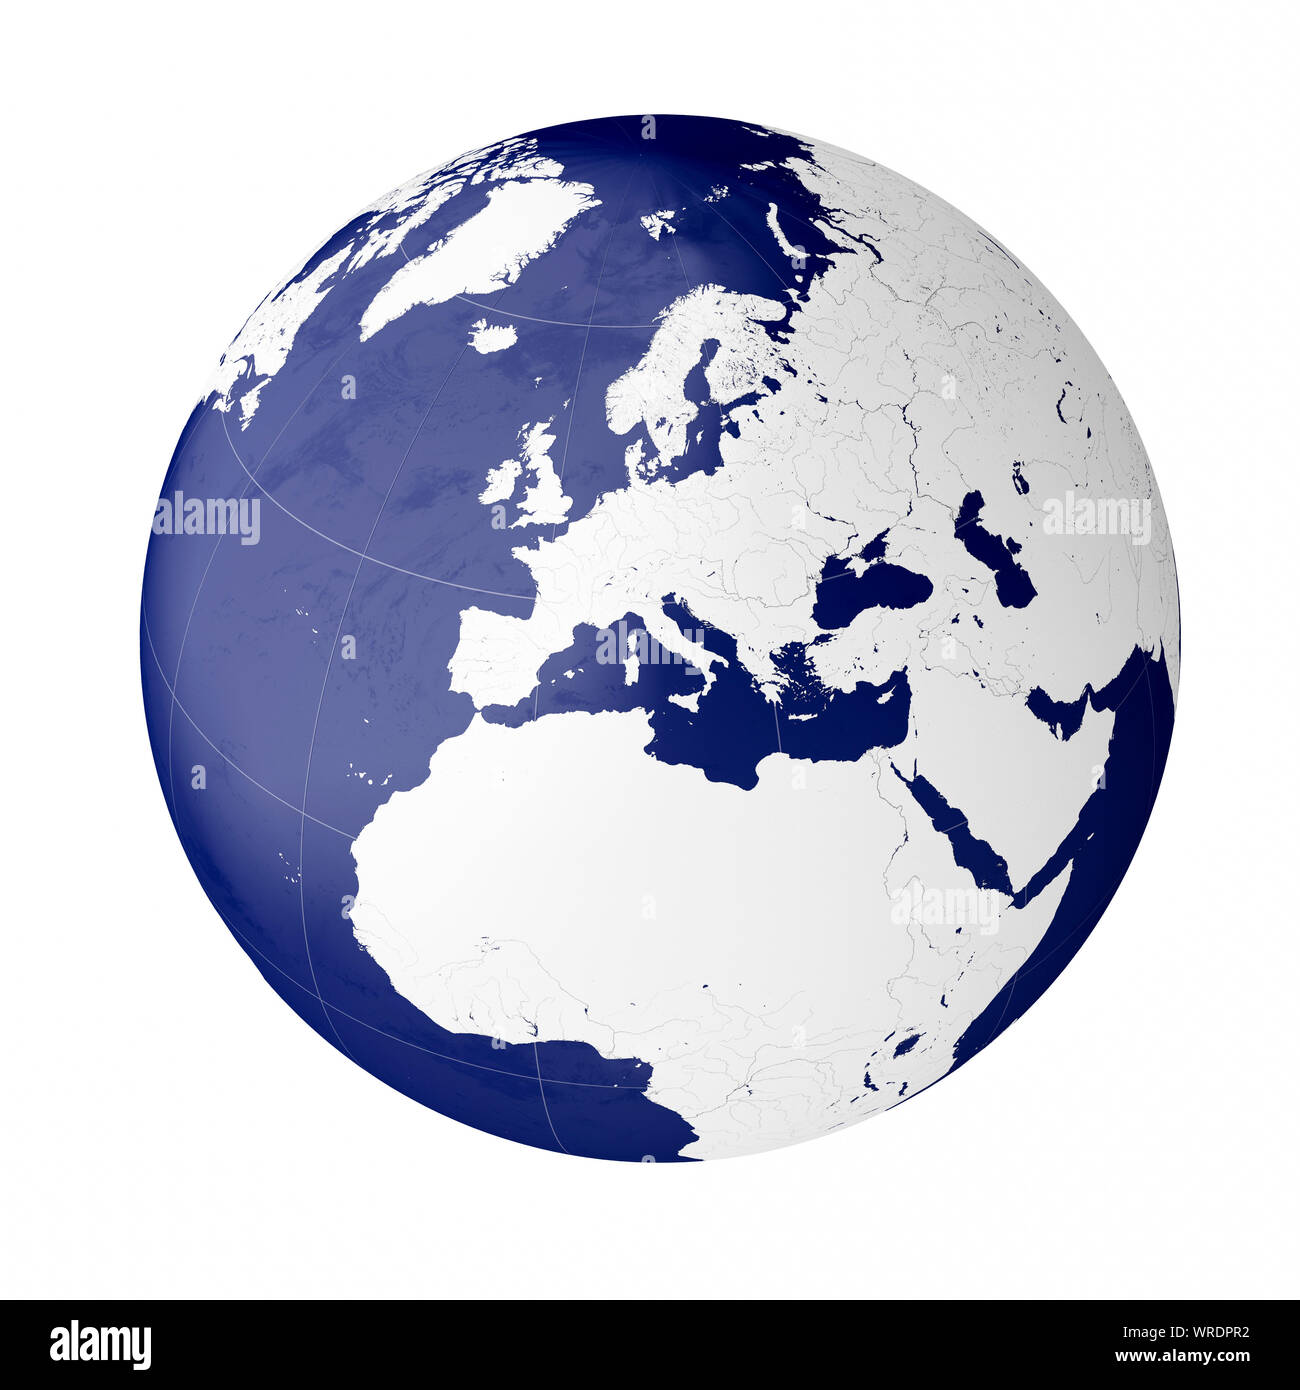 Globe montrant le continent de l'Europe sur la planète Terre Banque D'Images